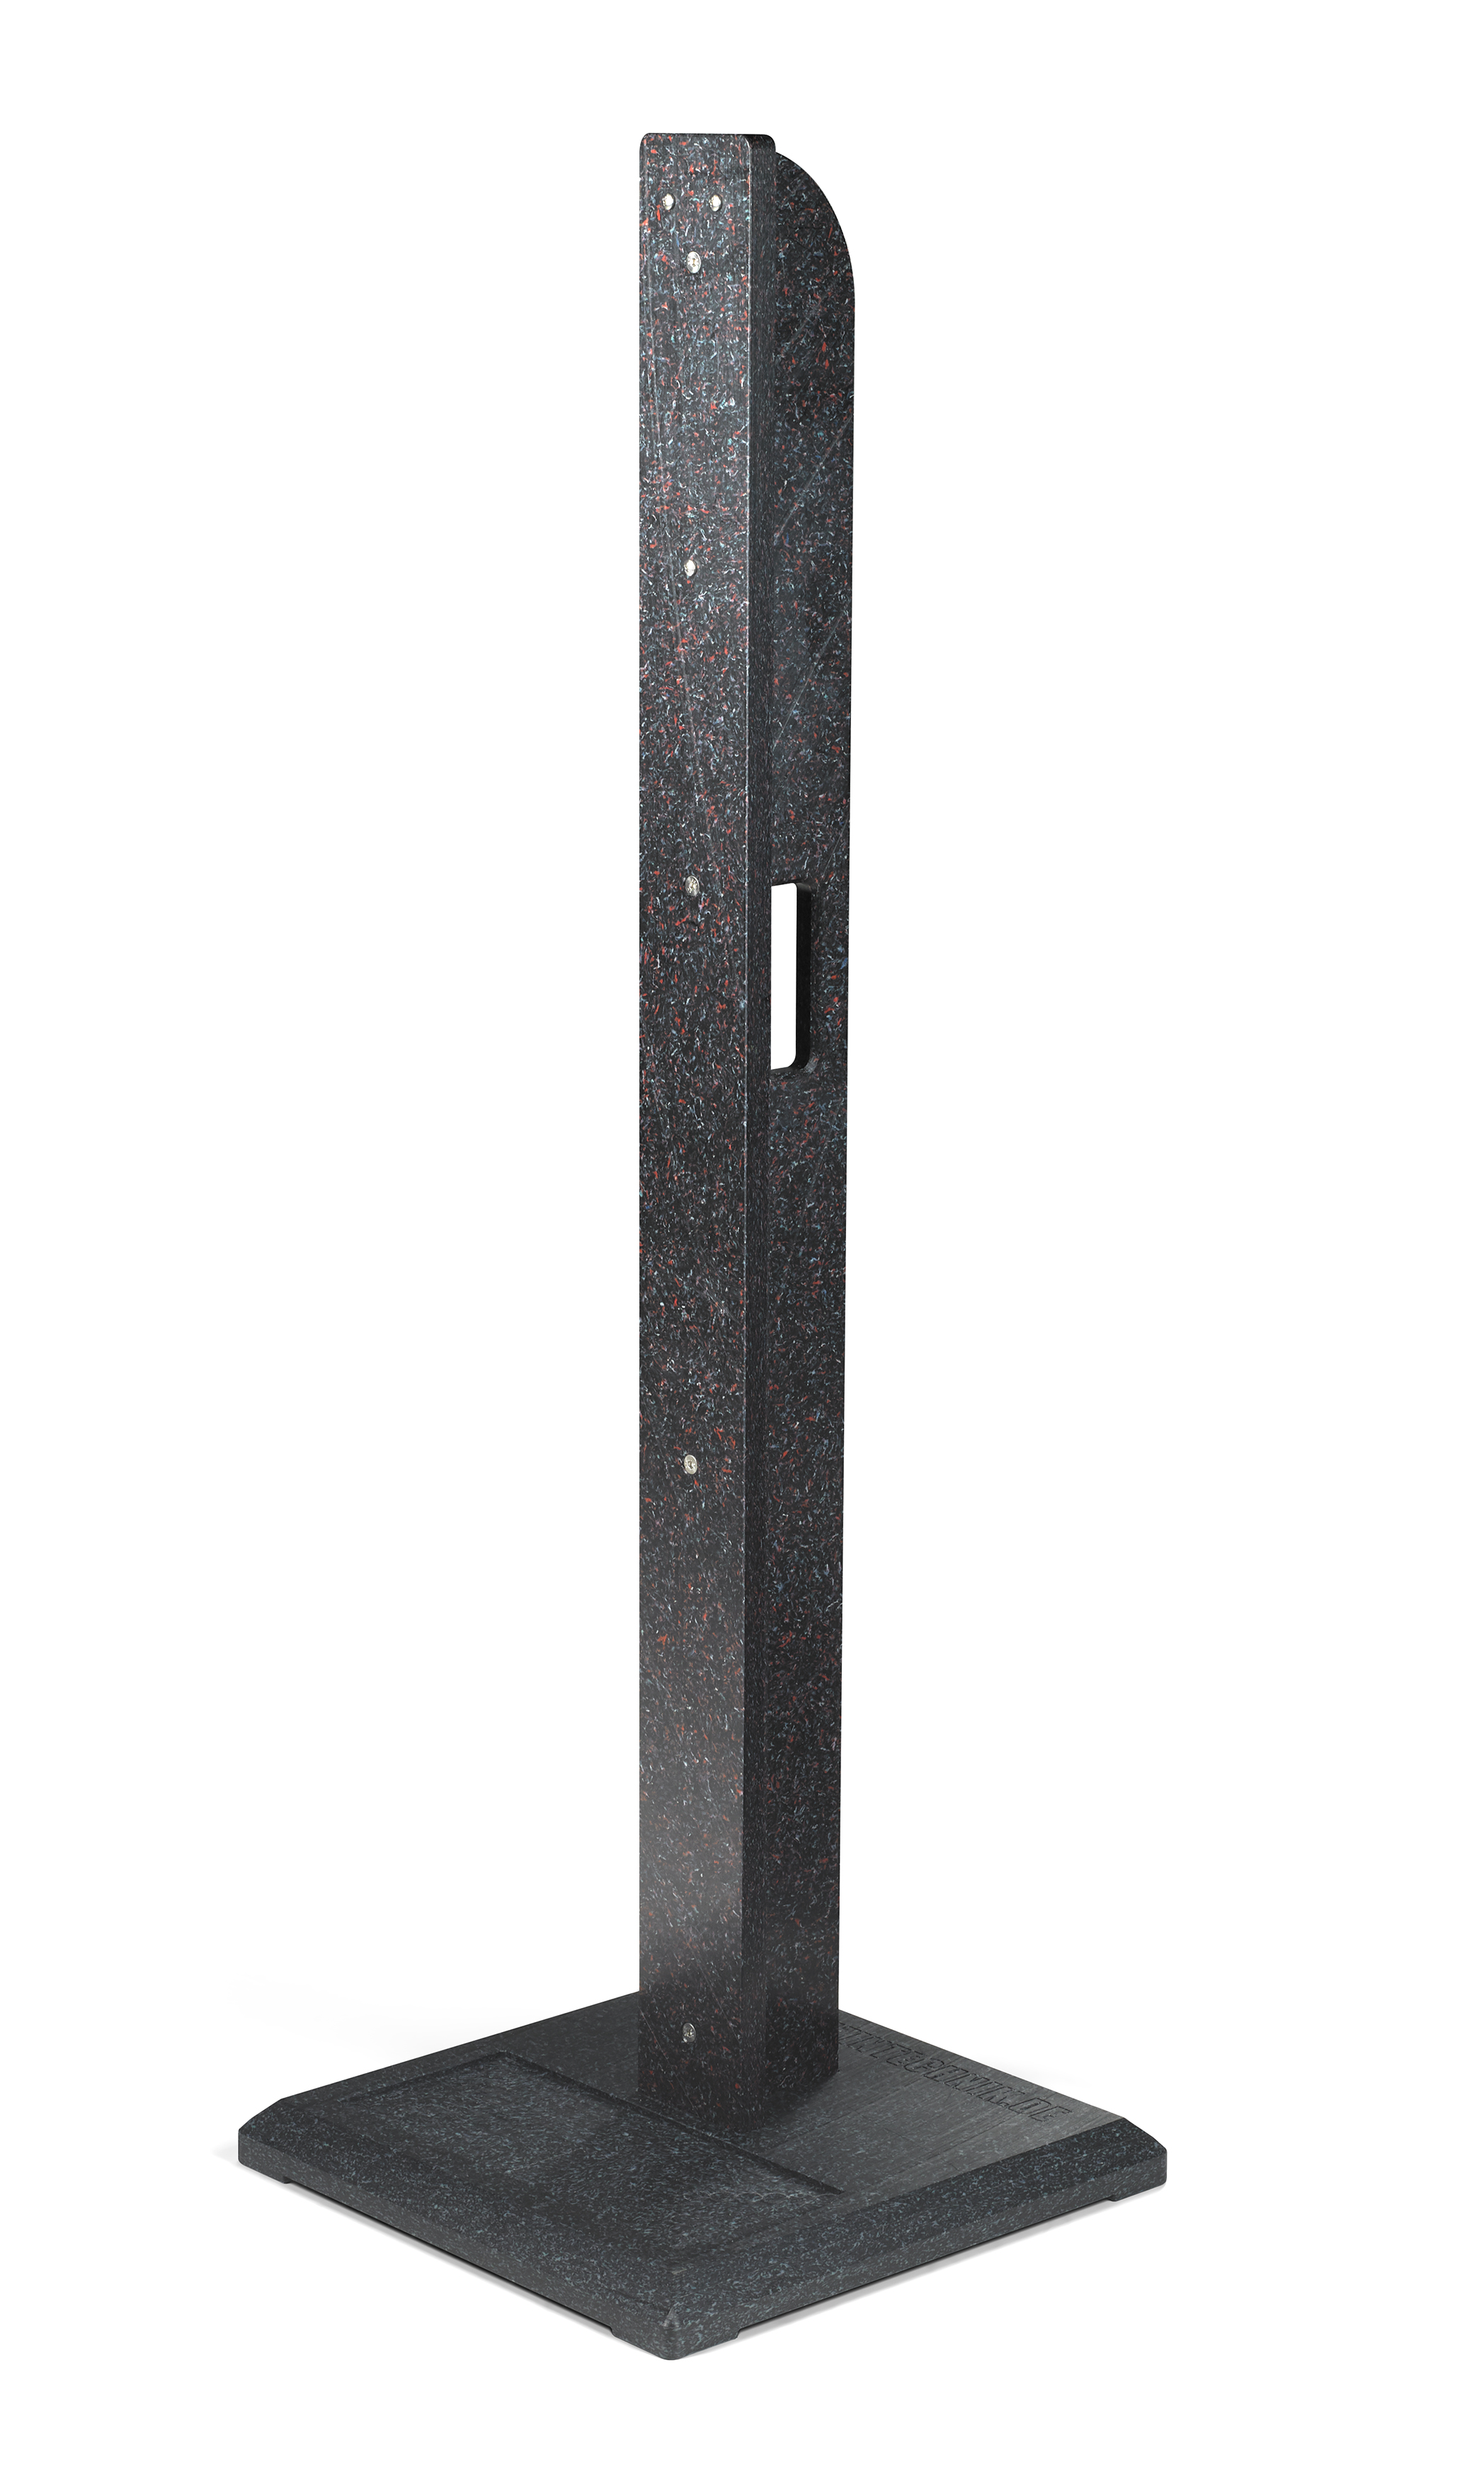 Ständer für Desinfektionsmittelspender, 120 cm hoch mit Tragegriff